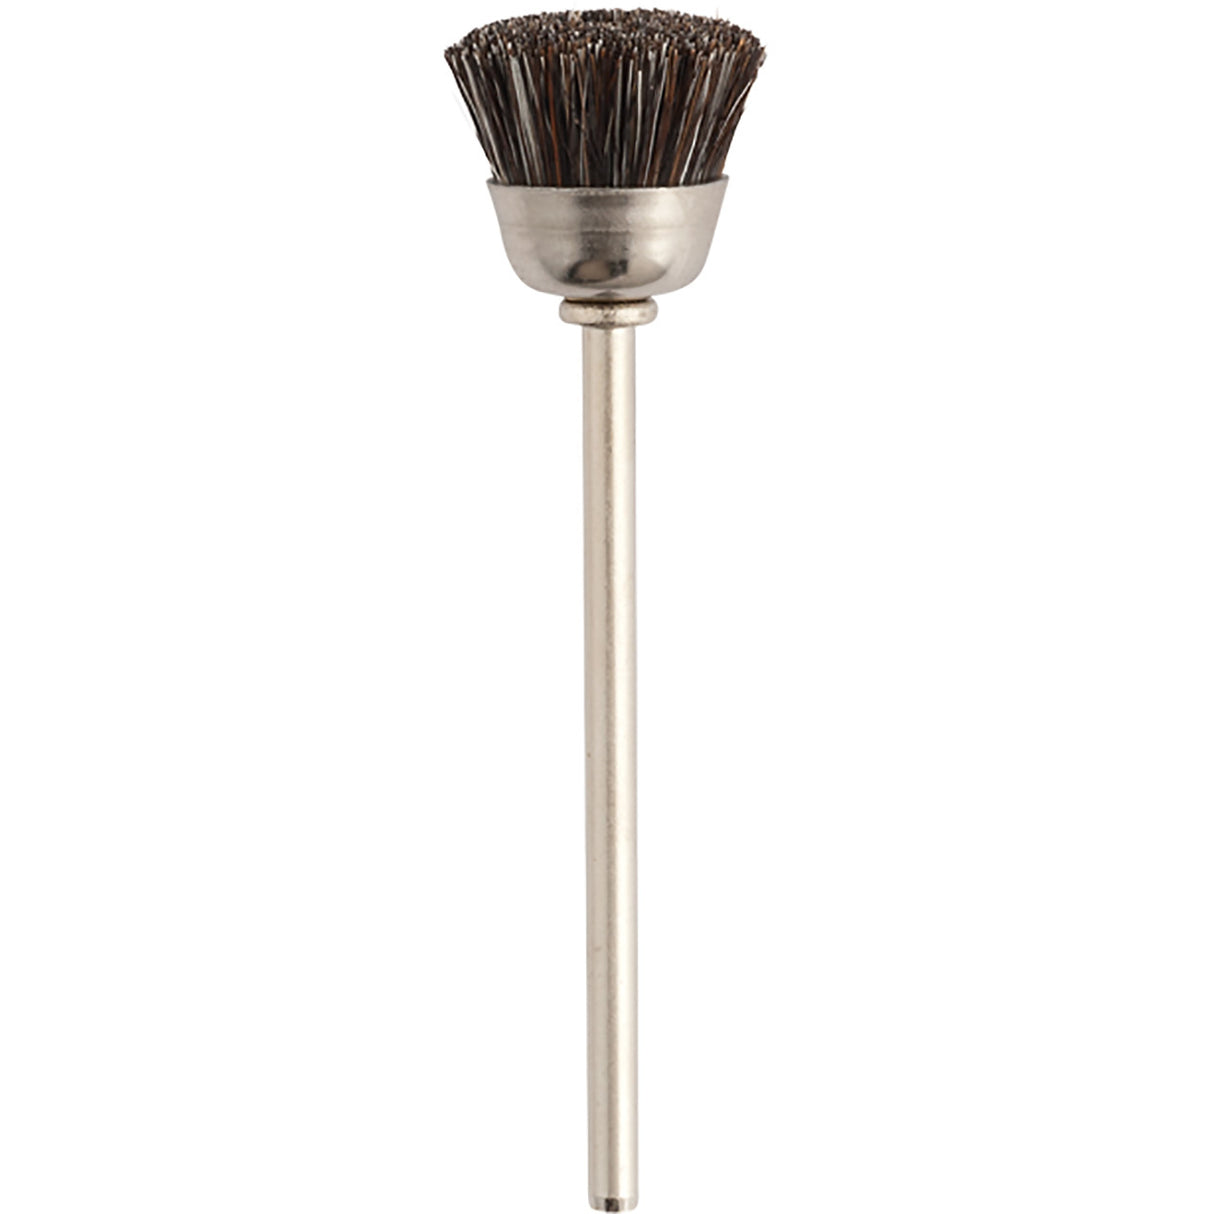 Supra "MM" Bristle Cup Brushes (Pkg. of 12)